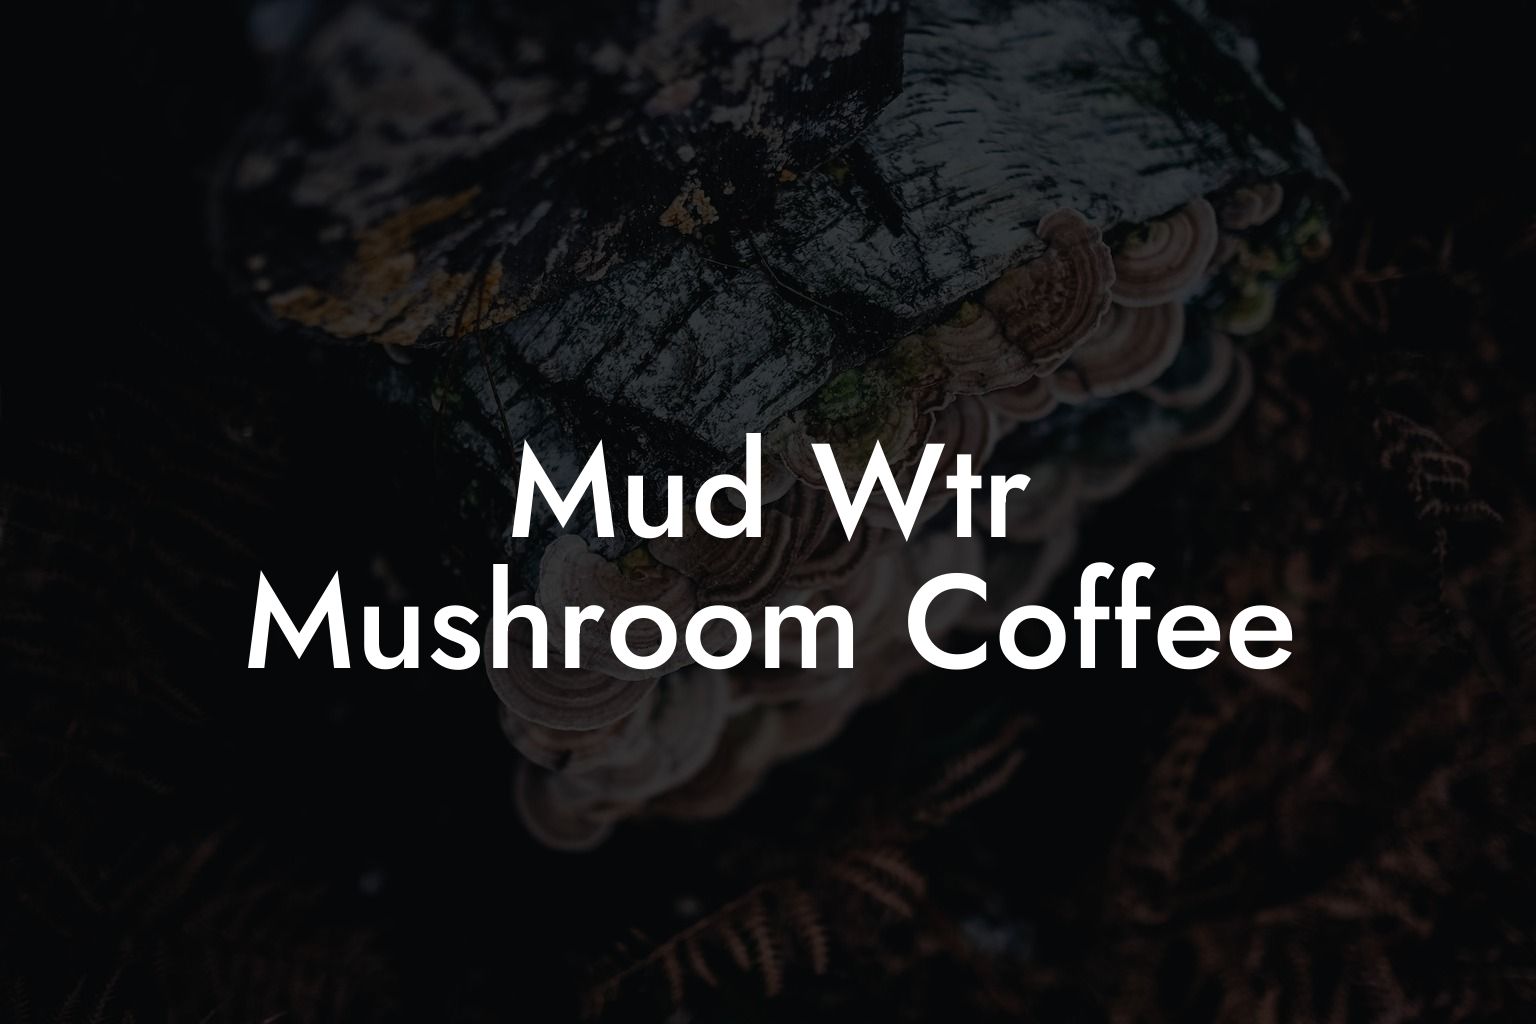 Mud Wtr Mushroom Coffee